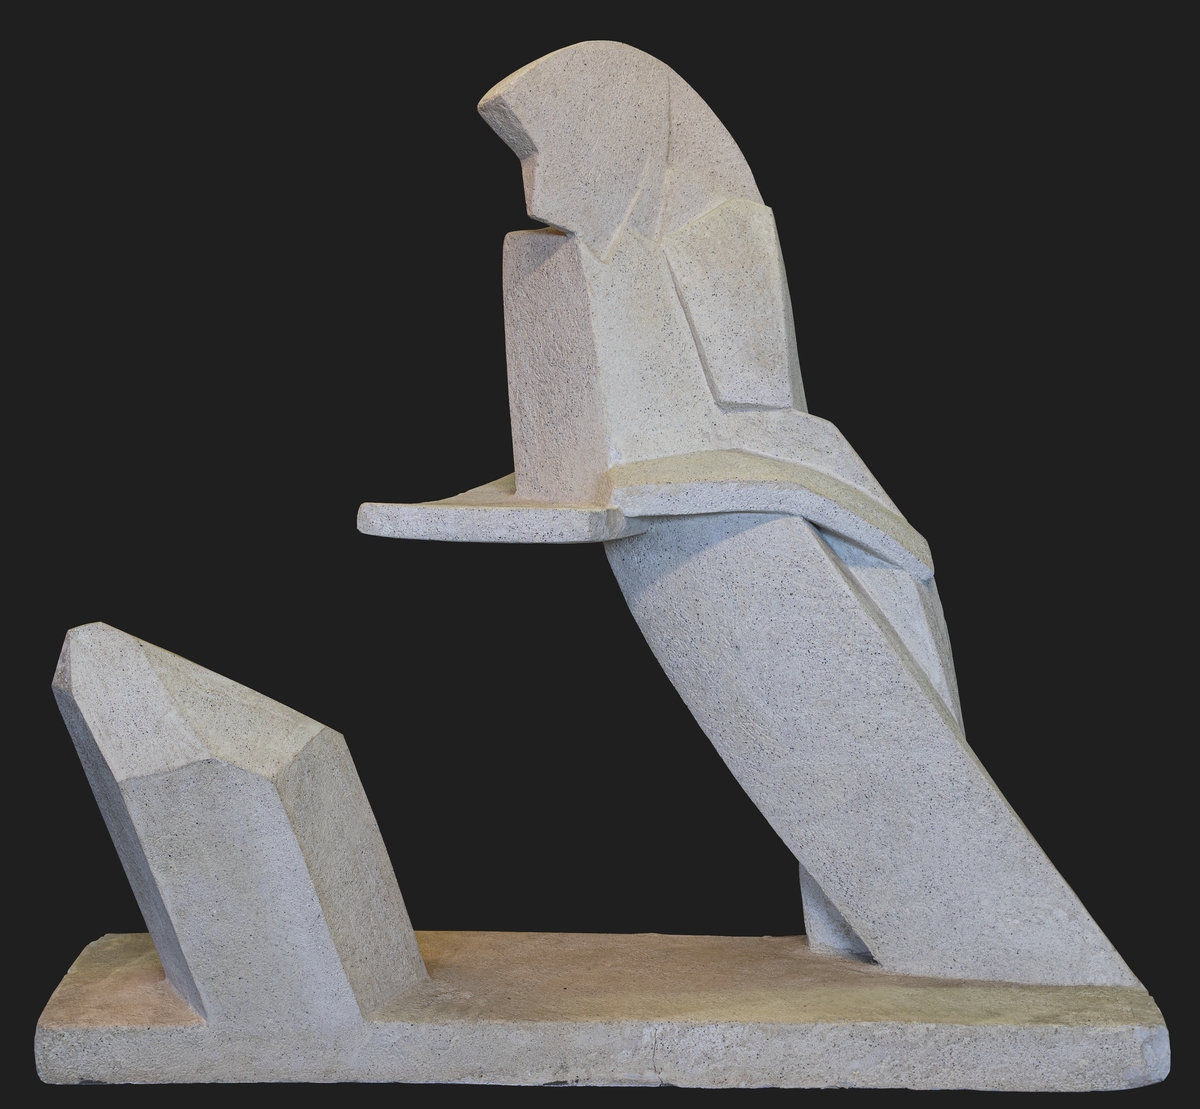 En abstrakt skulptur. Underst en sockel från vilken en mycket förenklad form/abstrakt form av en människa står lutad mot ett "stödplan" som svävar fritt utan stöd. Bredvid skjuter en bergkristallliknande form upp från sockeln.  Ytan består av ett tunt skikt av ljust grå betong. Betongytan ger intrycket att skulpturen är mycket tung, vilket inte är fallet då kärnan är av frigolit. Hela skulpturen är en spännande lek med tyngdlagen.